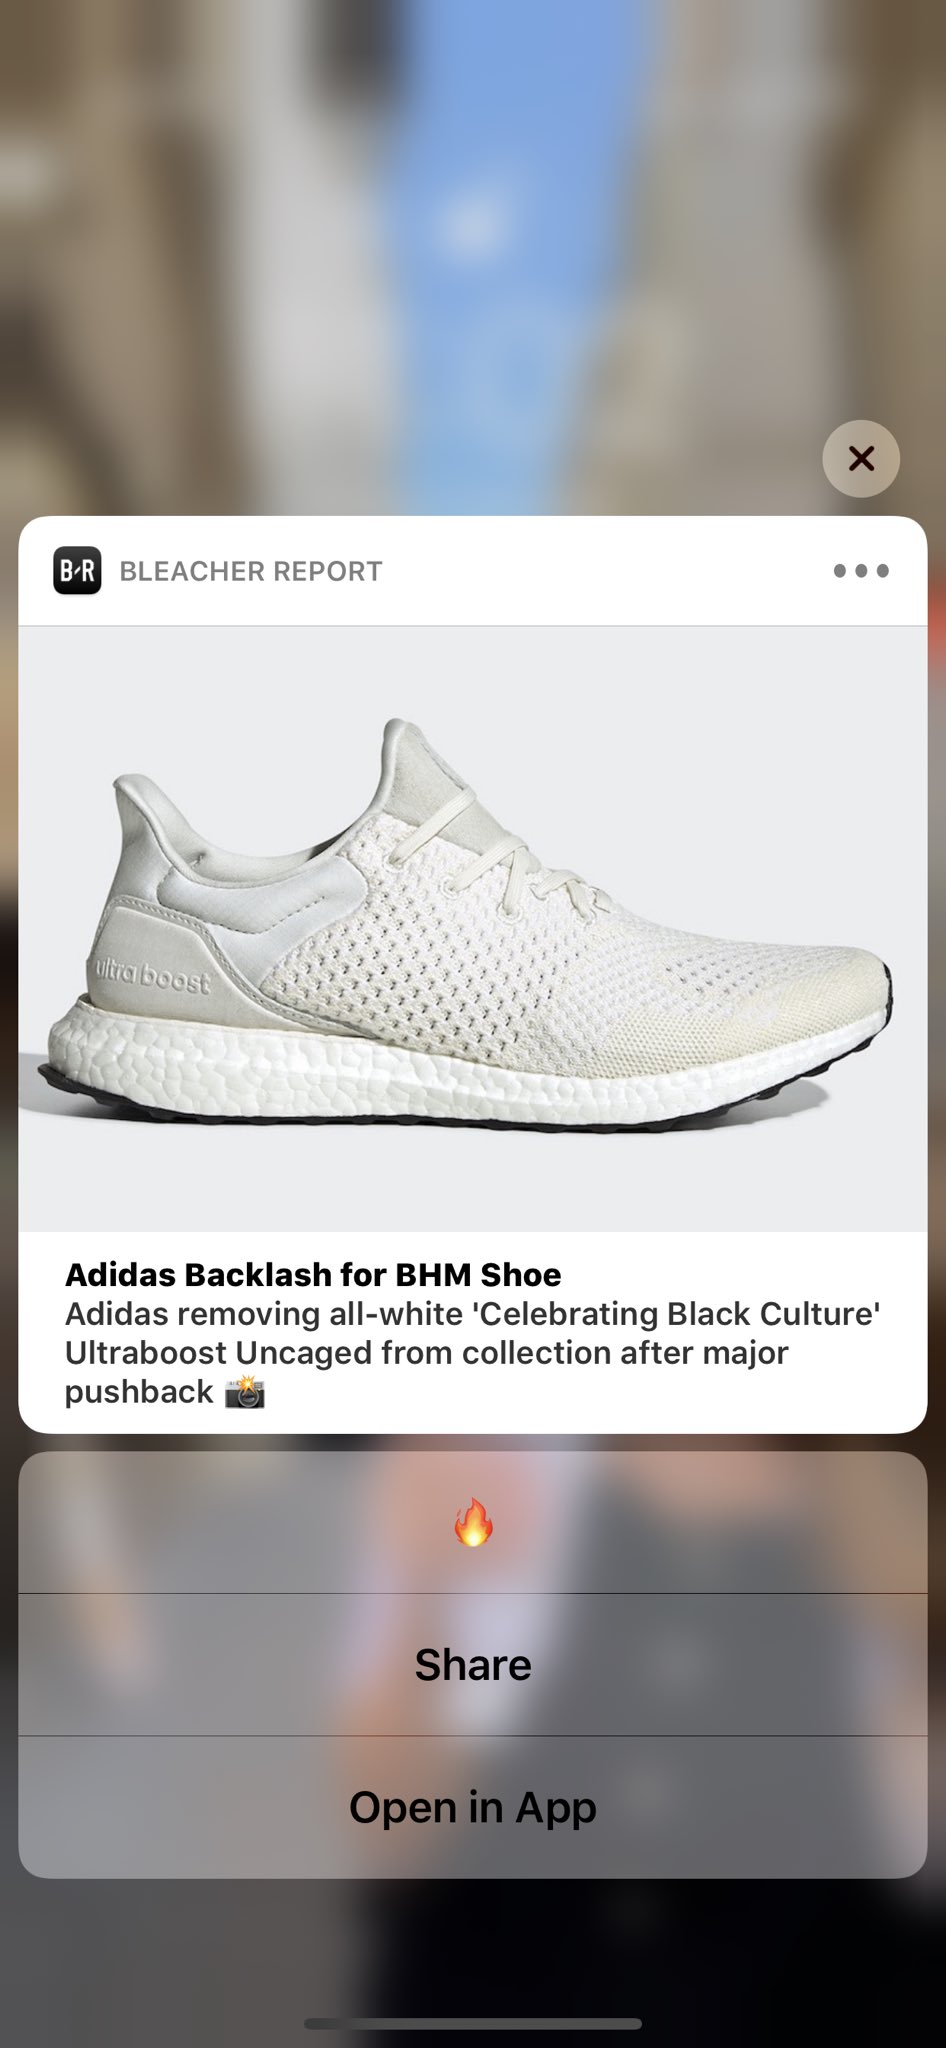 Desgastar Grasa entrar Adidas pulls Black History Month sneaker after backlash